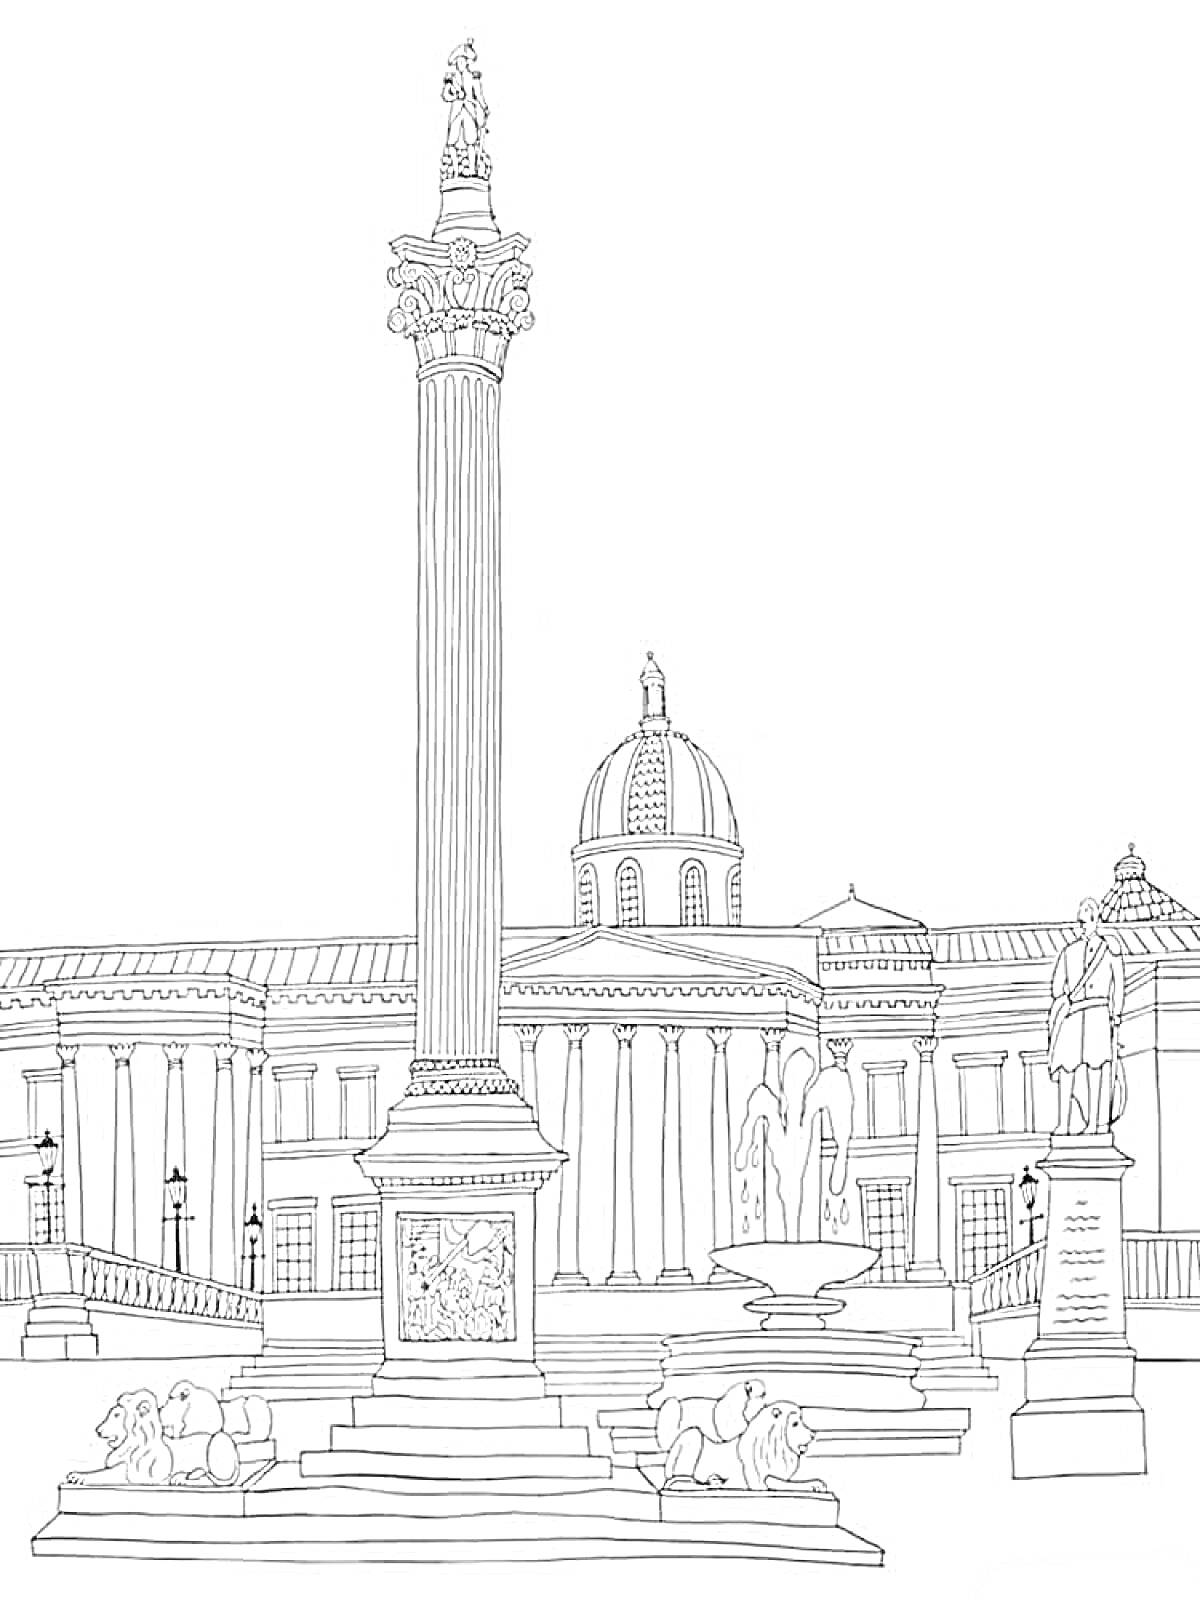 Раскраска Дворцовая площадь с Александровской колонной, зданиями, скульптурами львов и архангела Гавриила